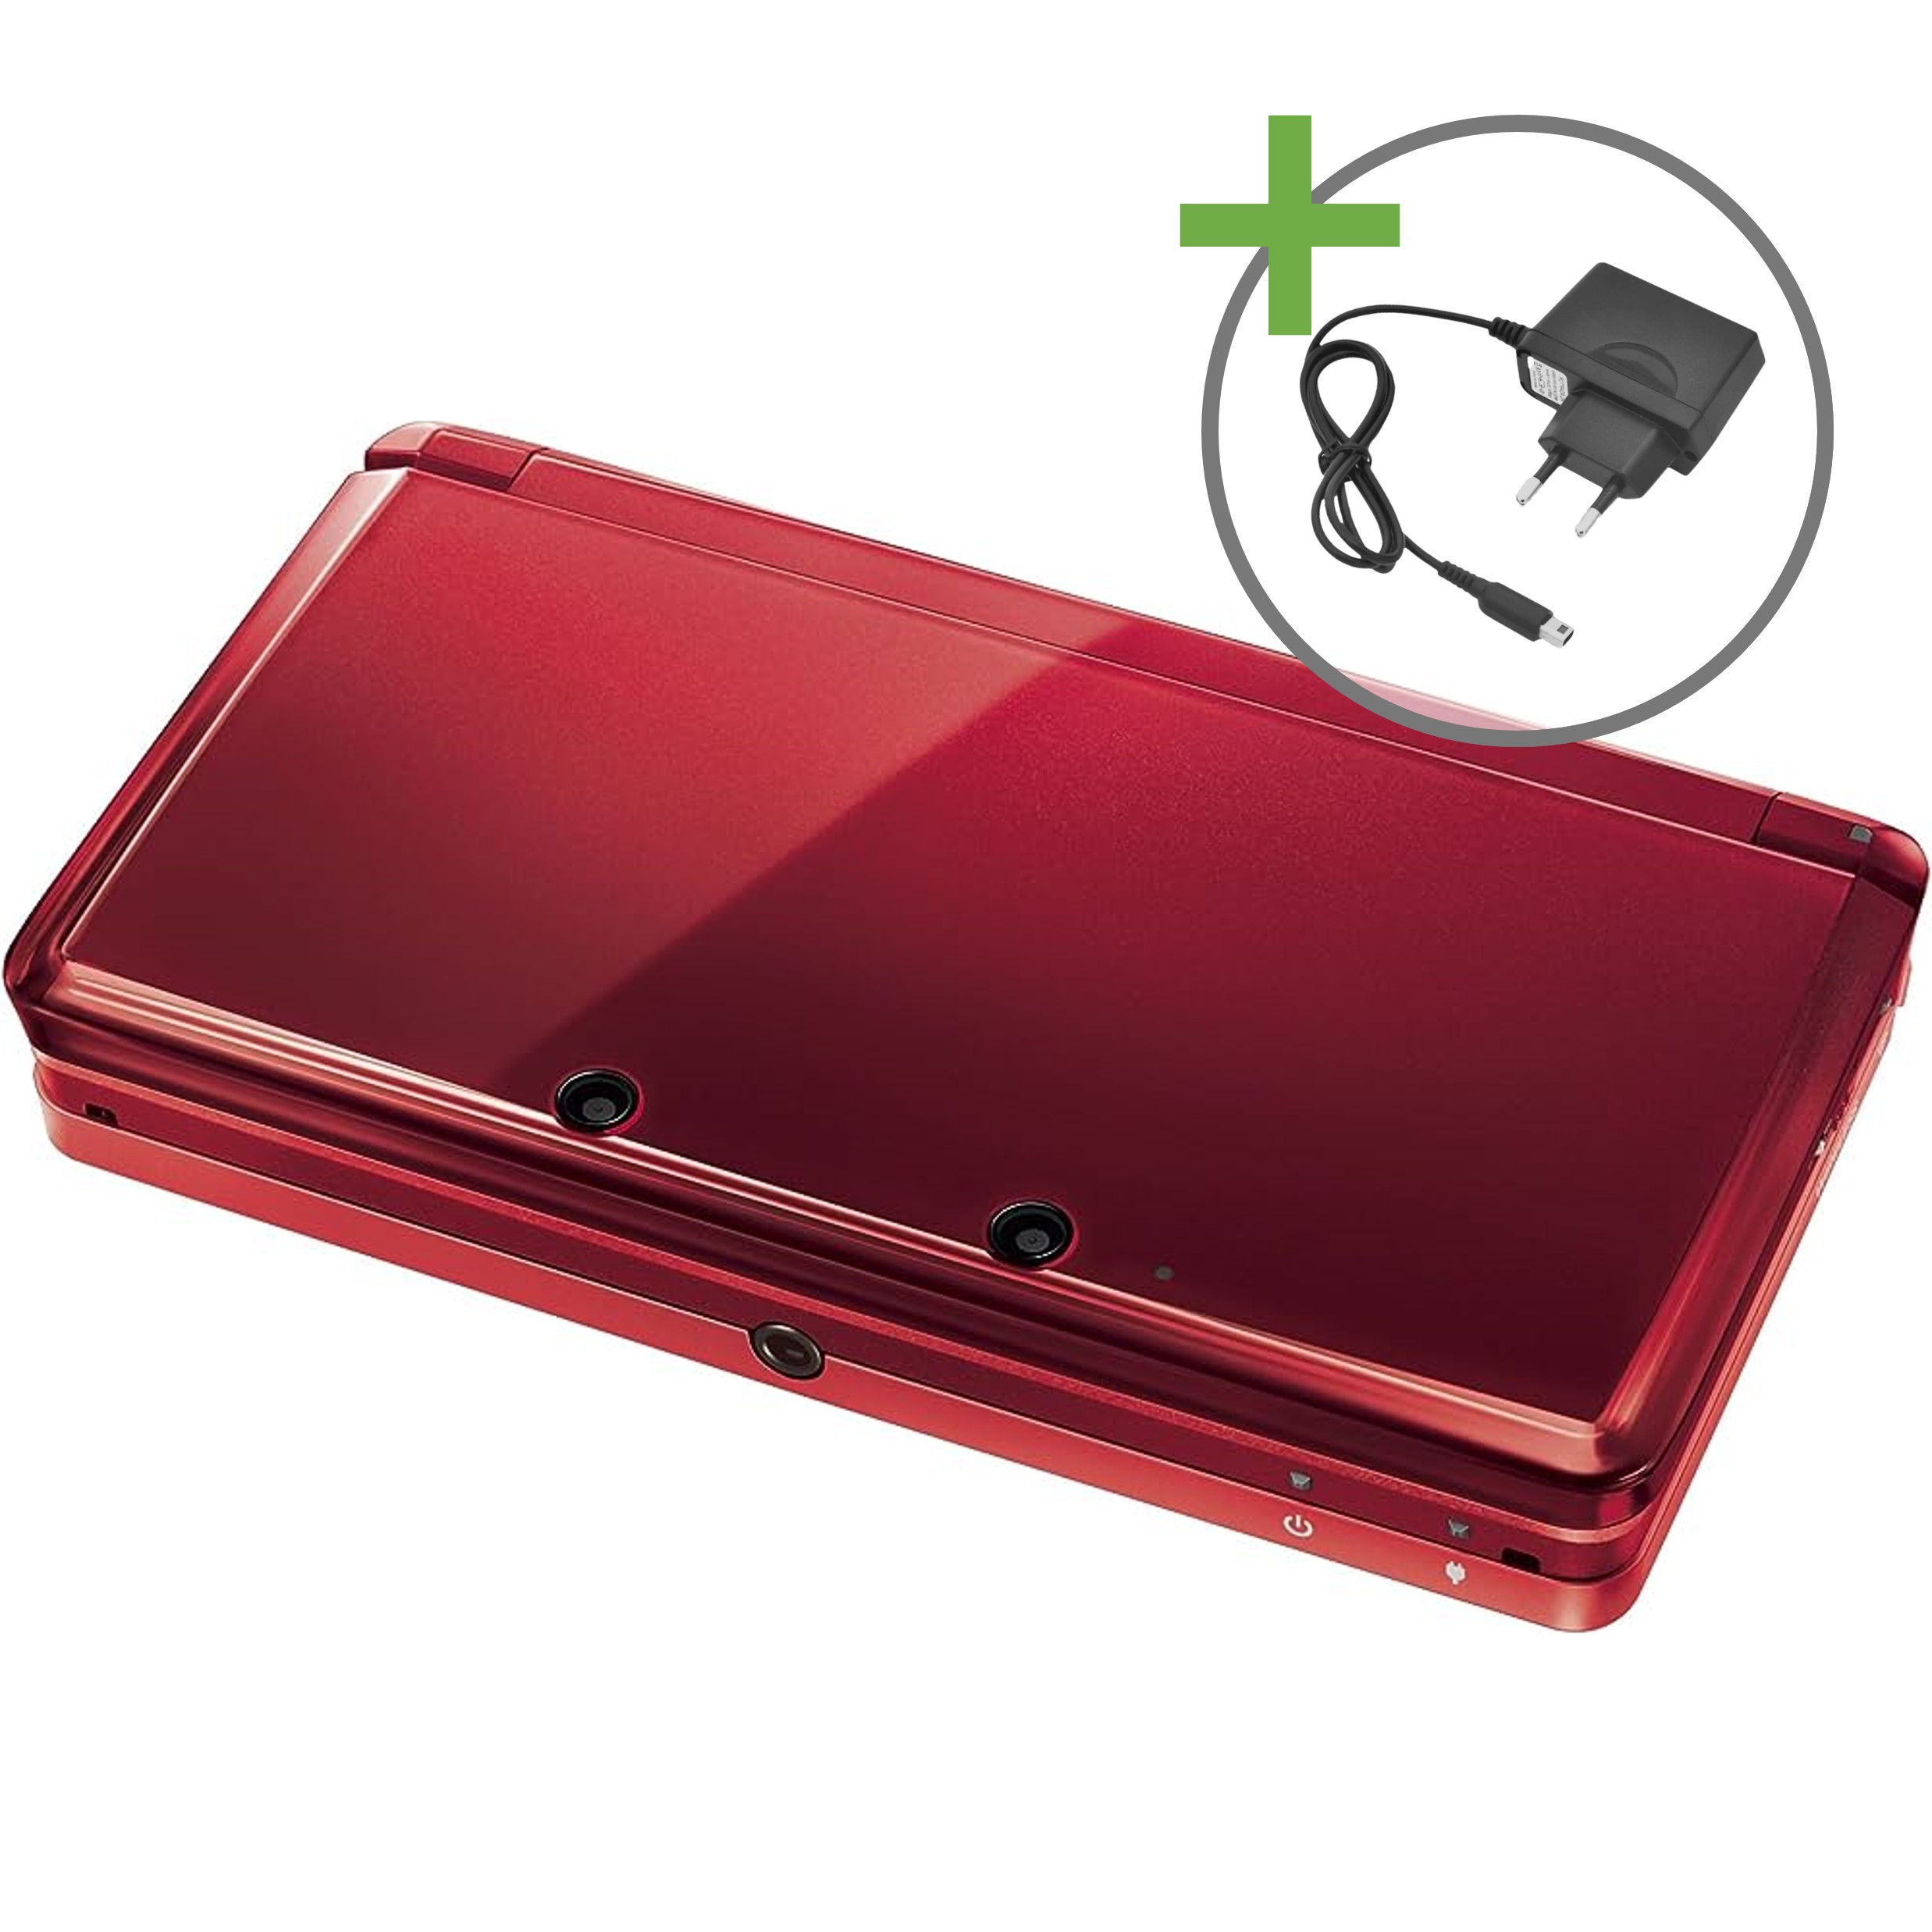 Nintendo 3DS - Metallic Red [Complete] | Nintendo 3DS Hardware | RetroNintendoKopen.nl